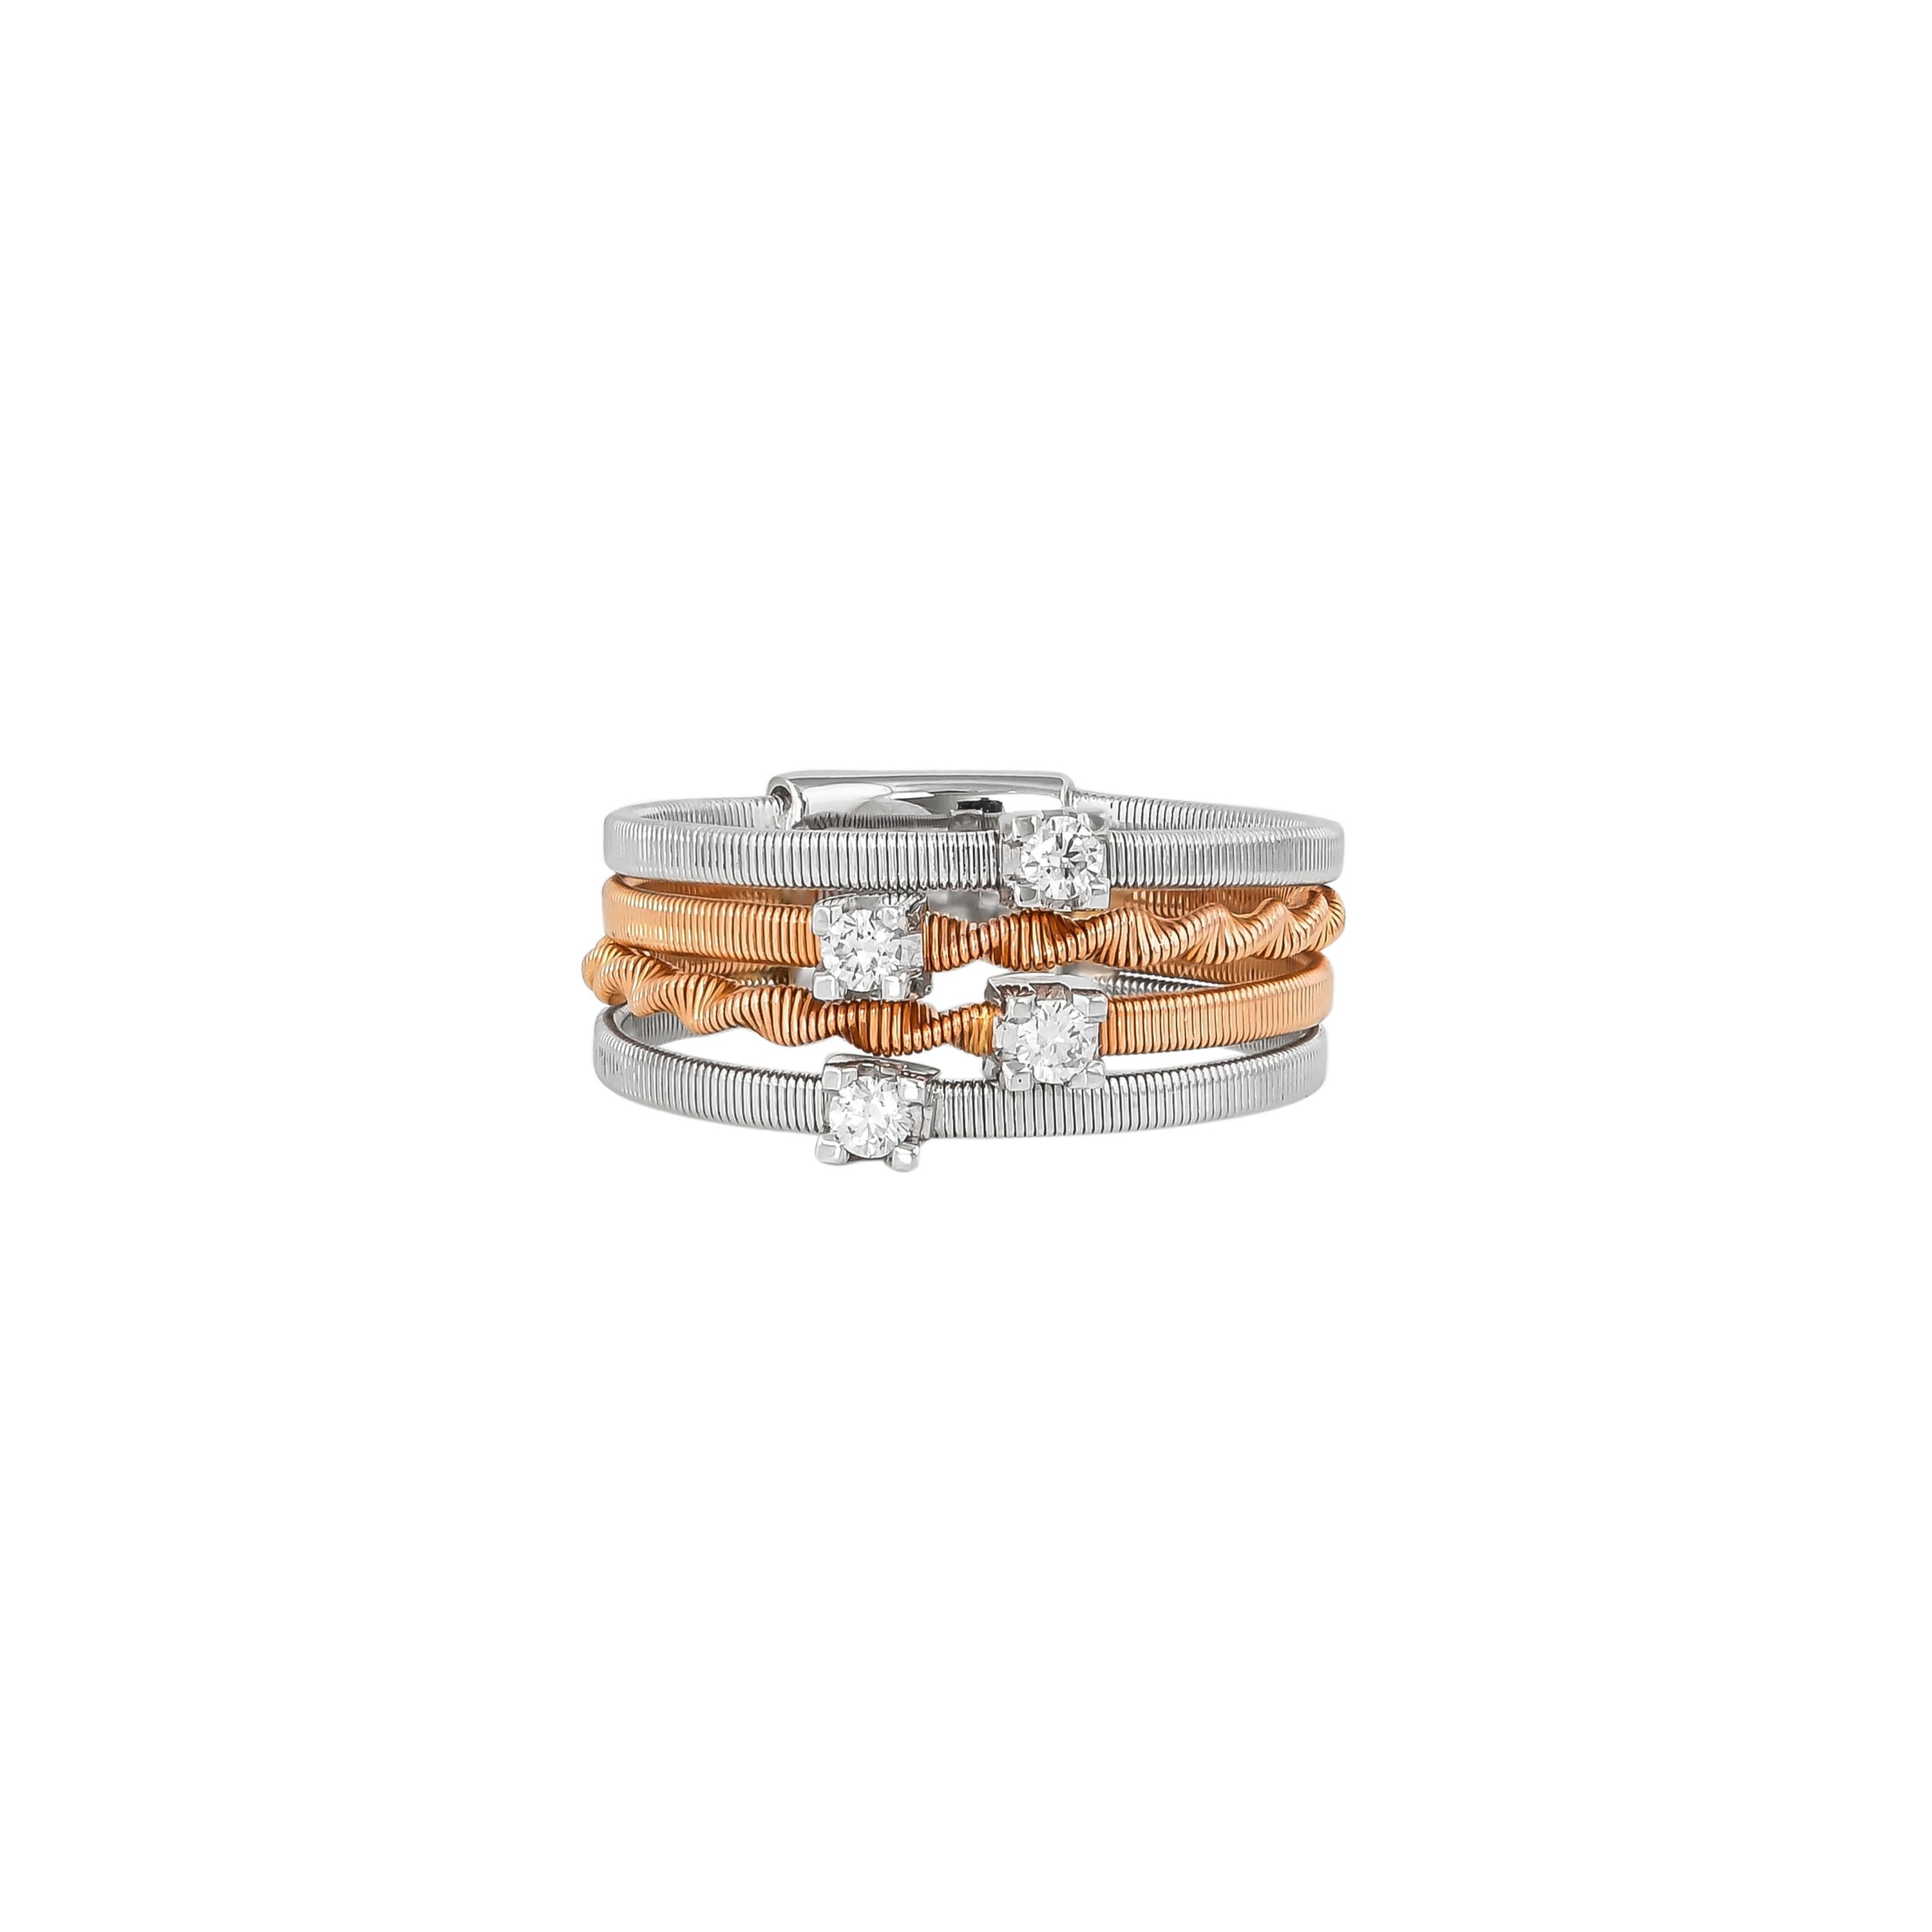 Round Cut 0.171 Carat Diamond Ring in 18 Karat White & Rose Gold For Sale